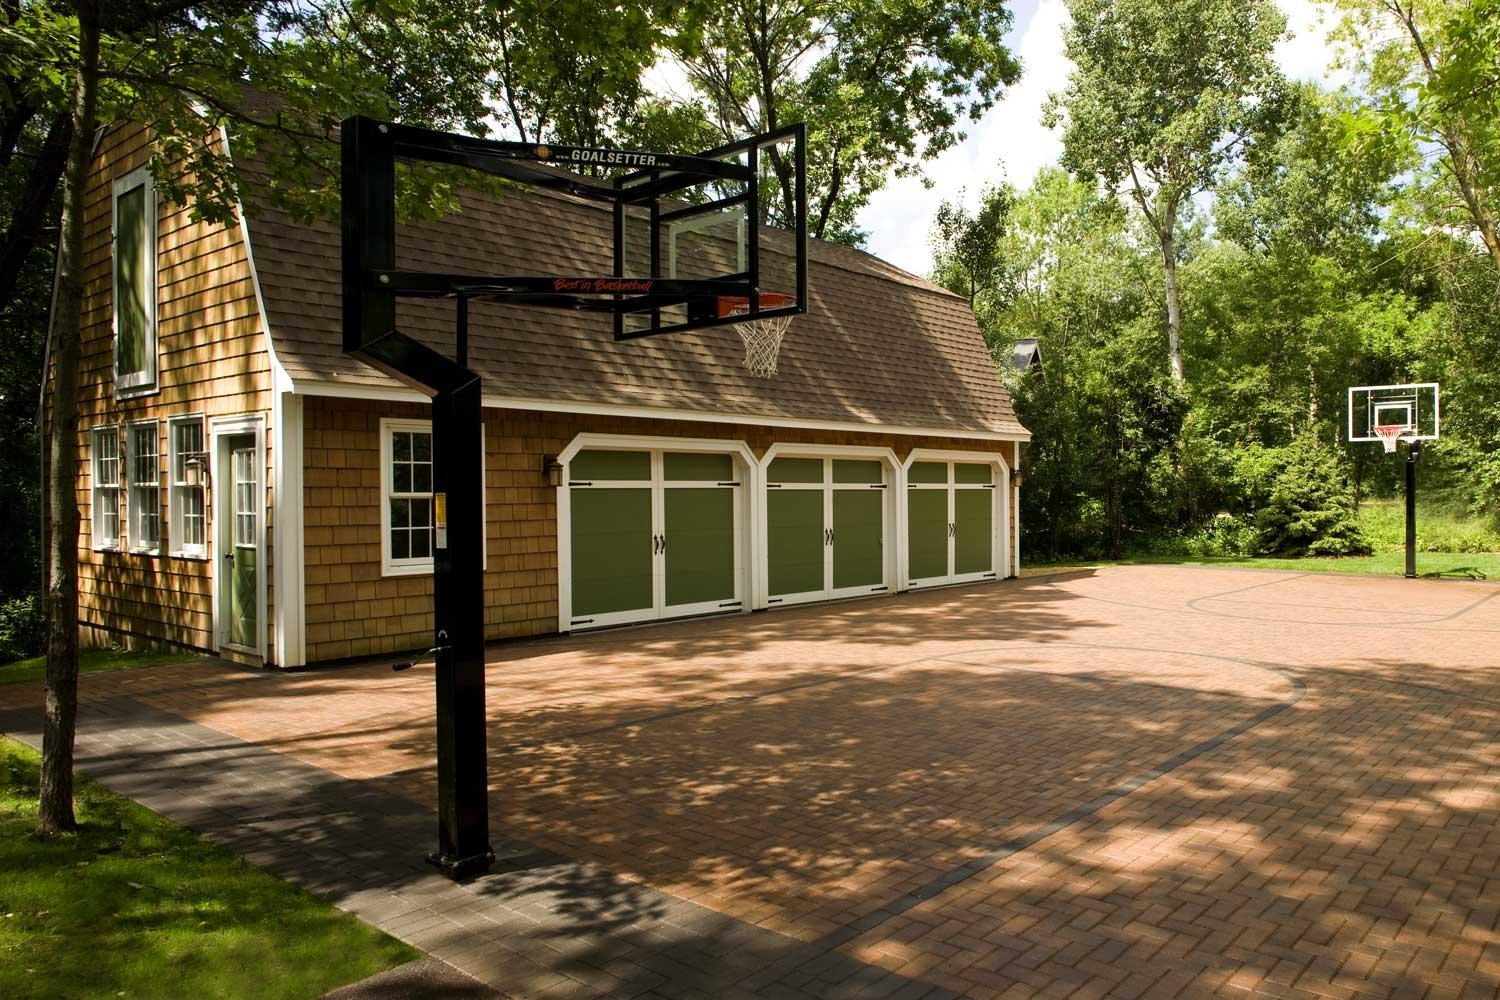 Brick paver basketball court driveway